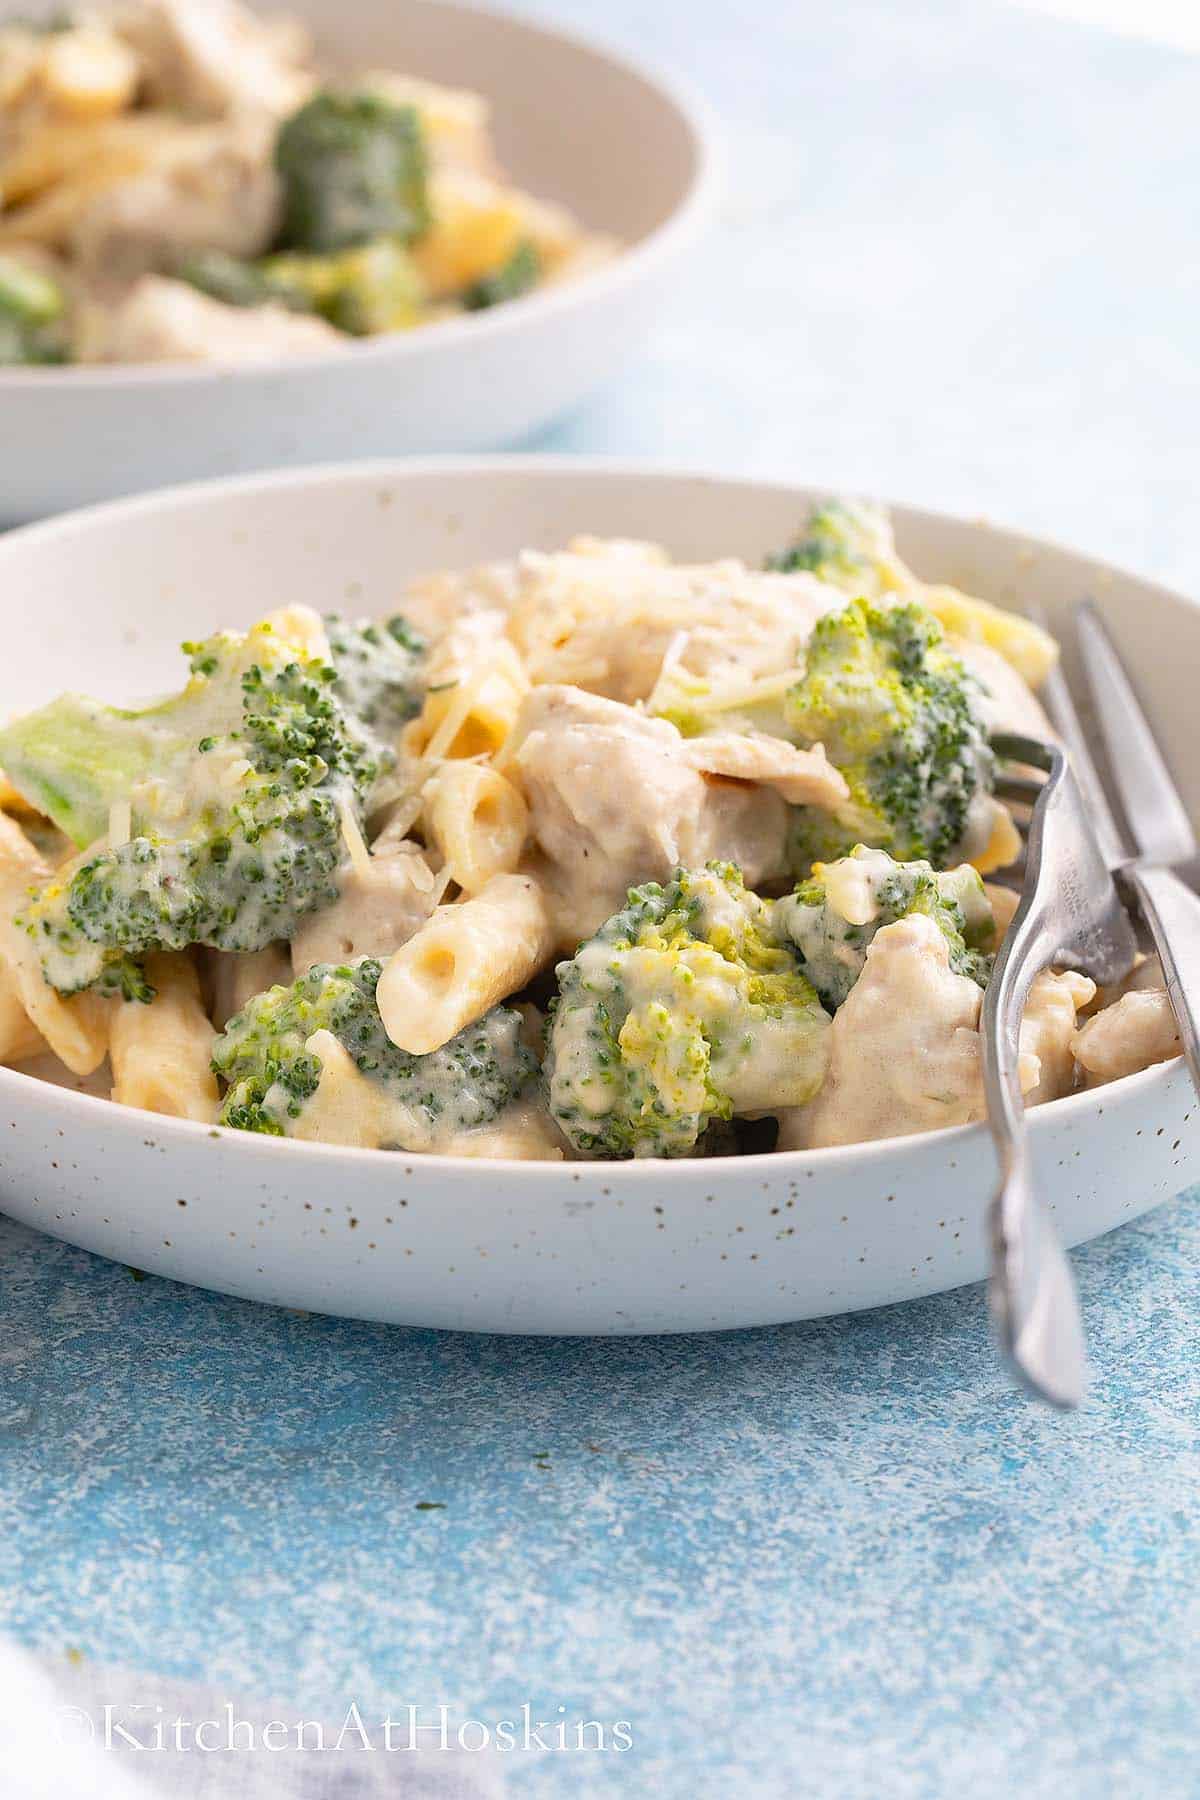 Chicken broccoli alfredo in a white dish with silverware.